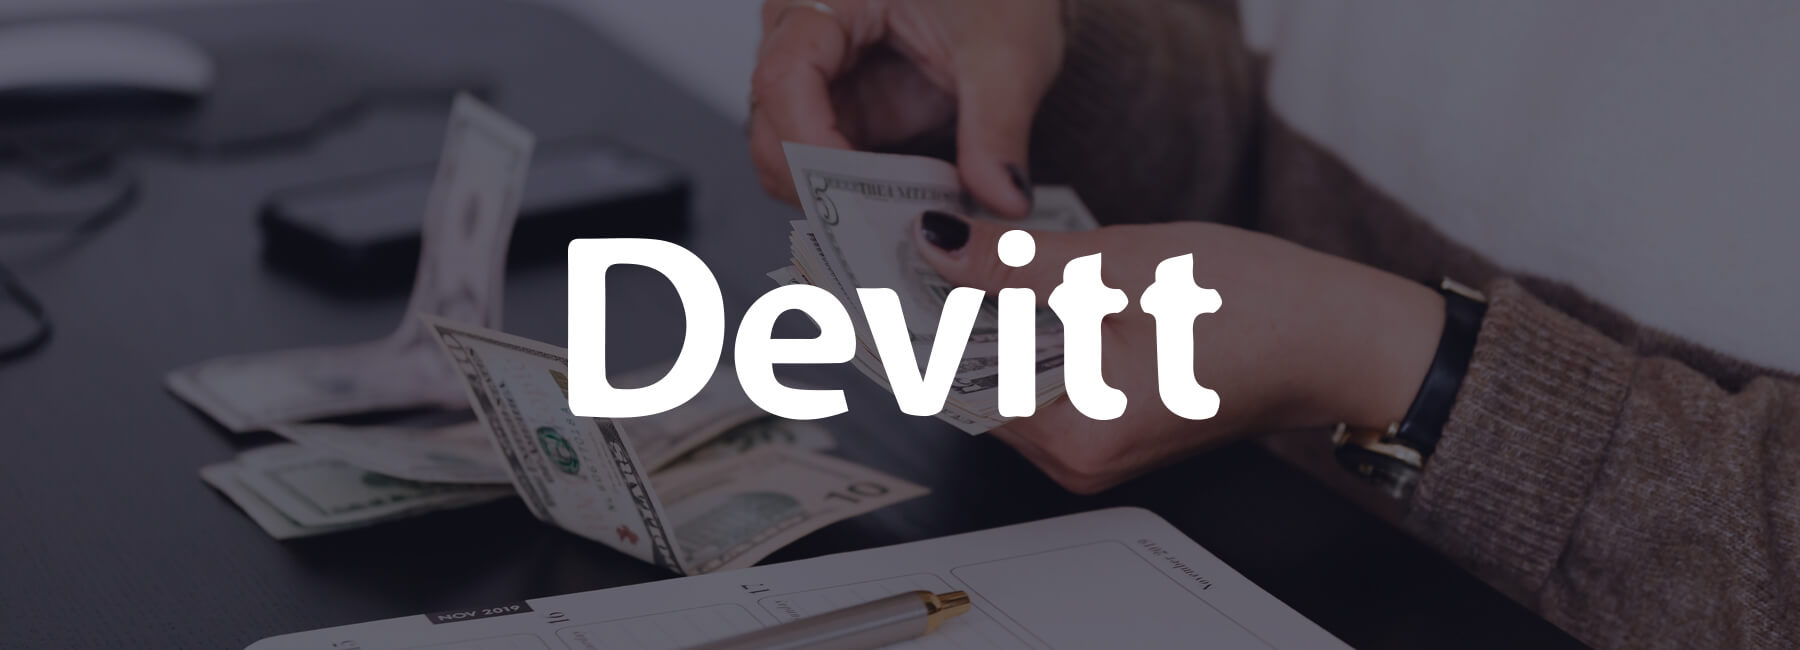 Devitt Insurance wil de online klantreis optimaliseren